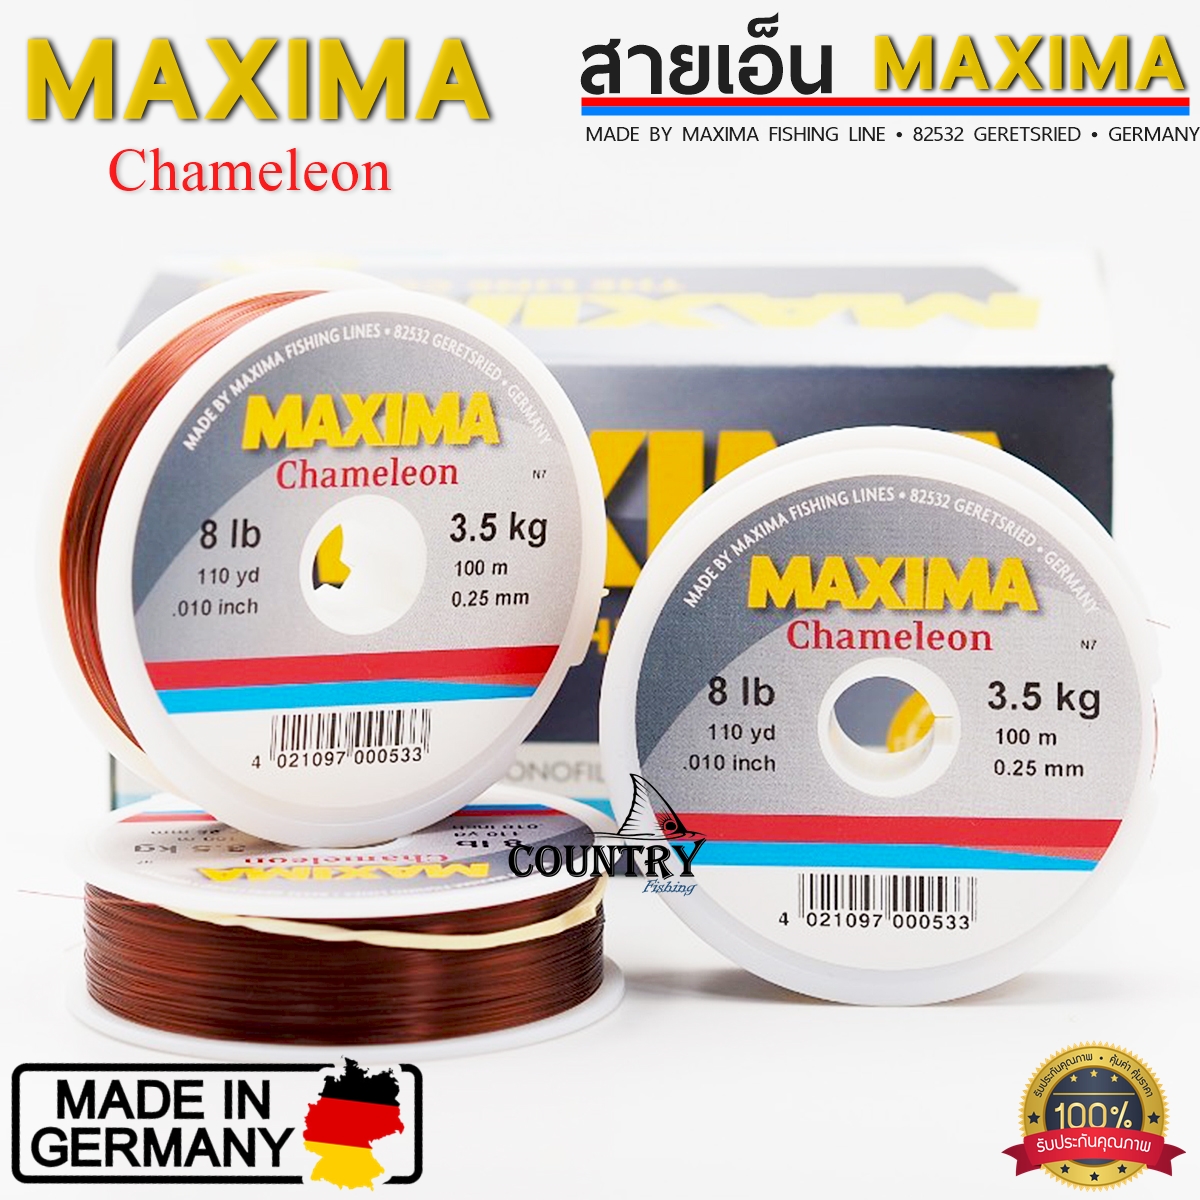 MAXIMA Chameleon สายเอ็นแม็กซิม่า สีน้ำตาล เป็นที่นิยมมาก เหนียว หนุ่ม จมน้ำเร็ว